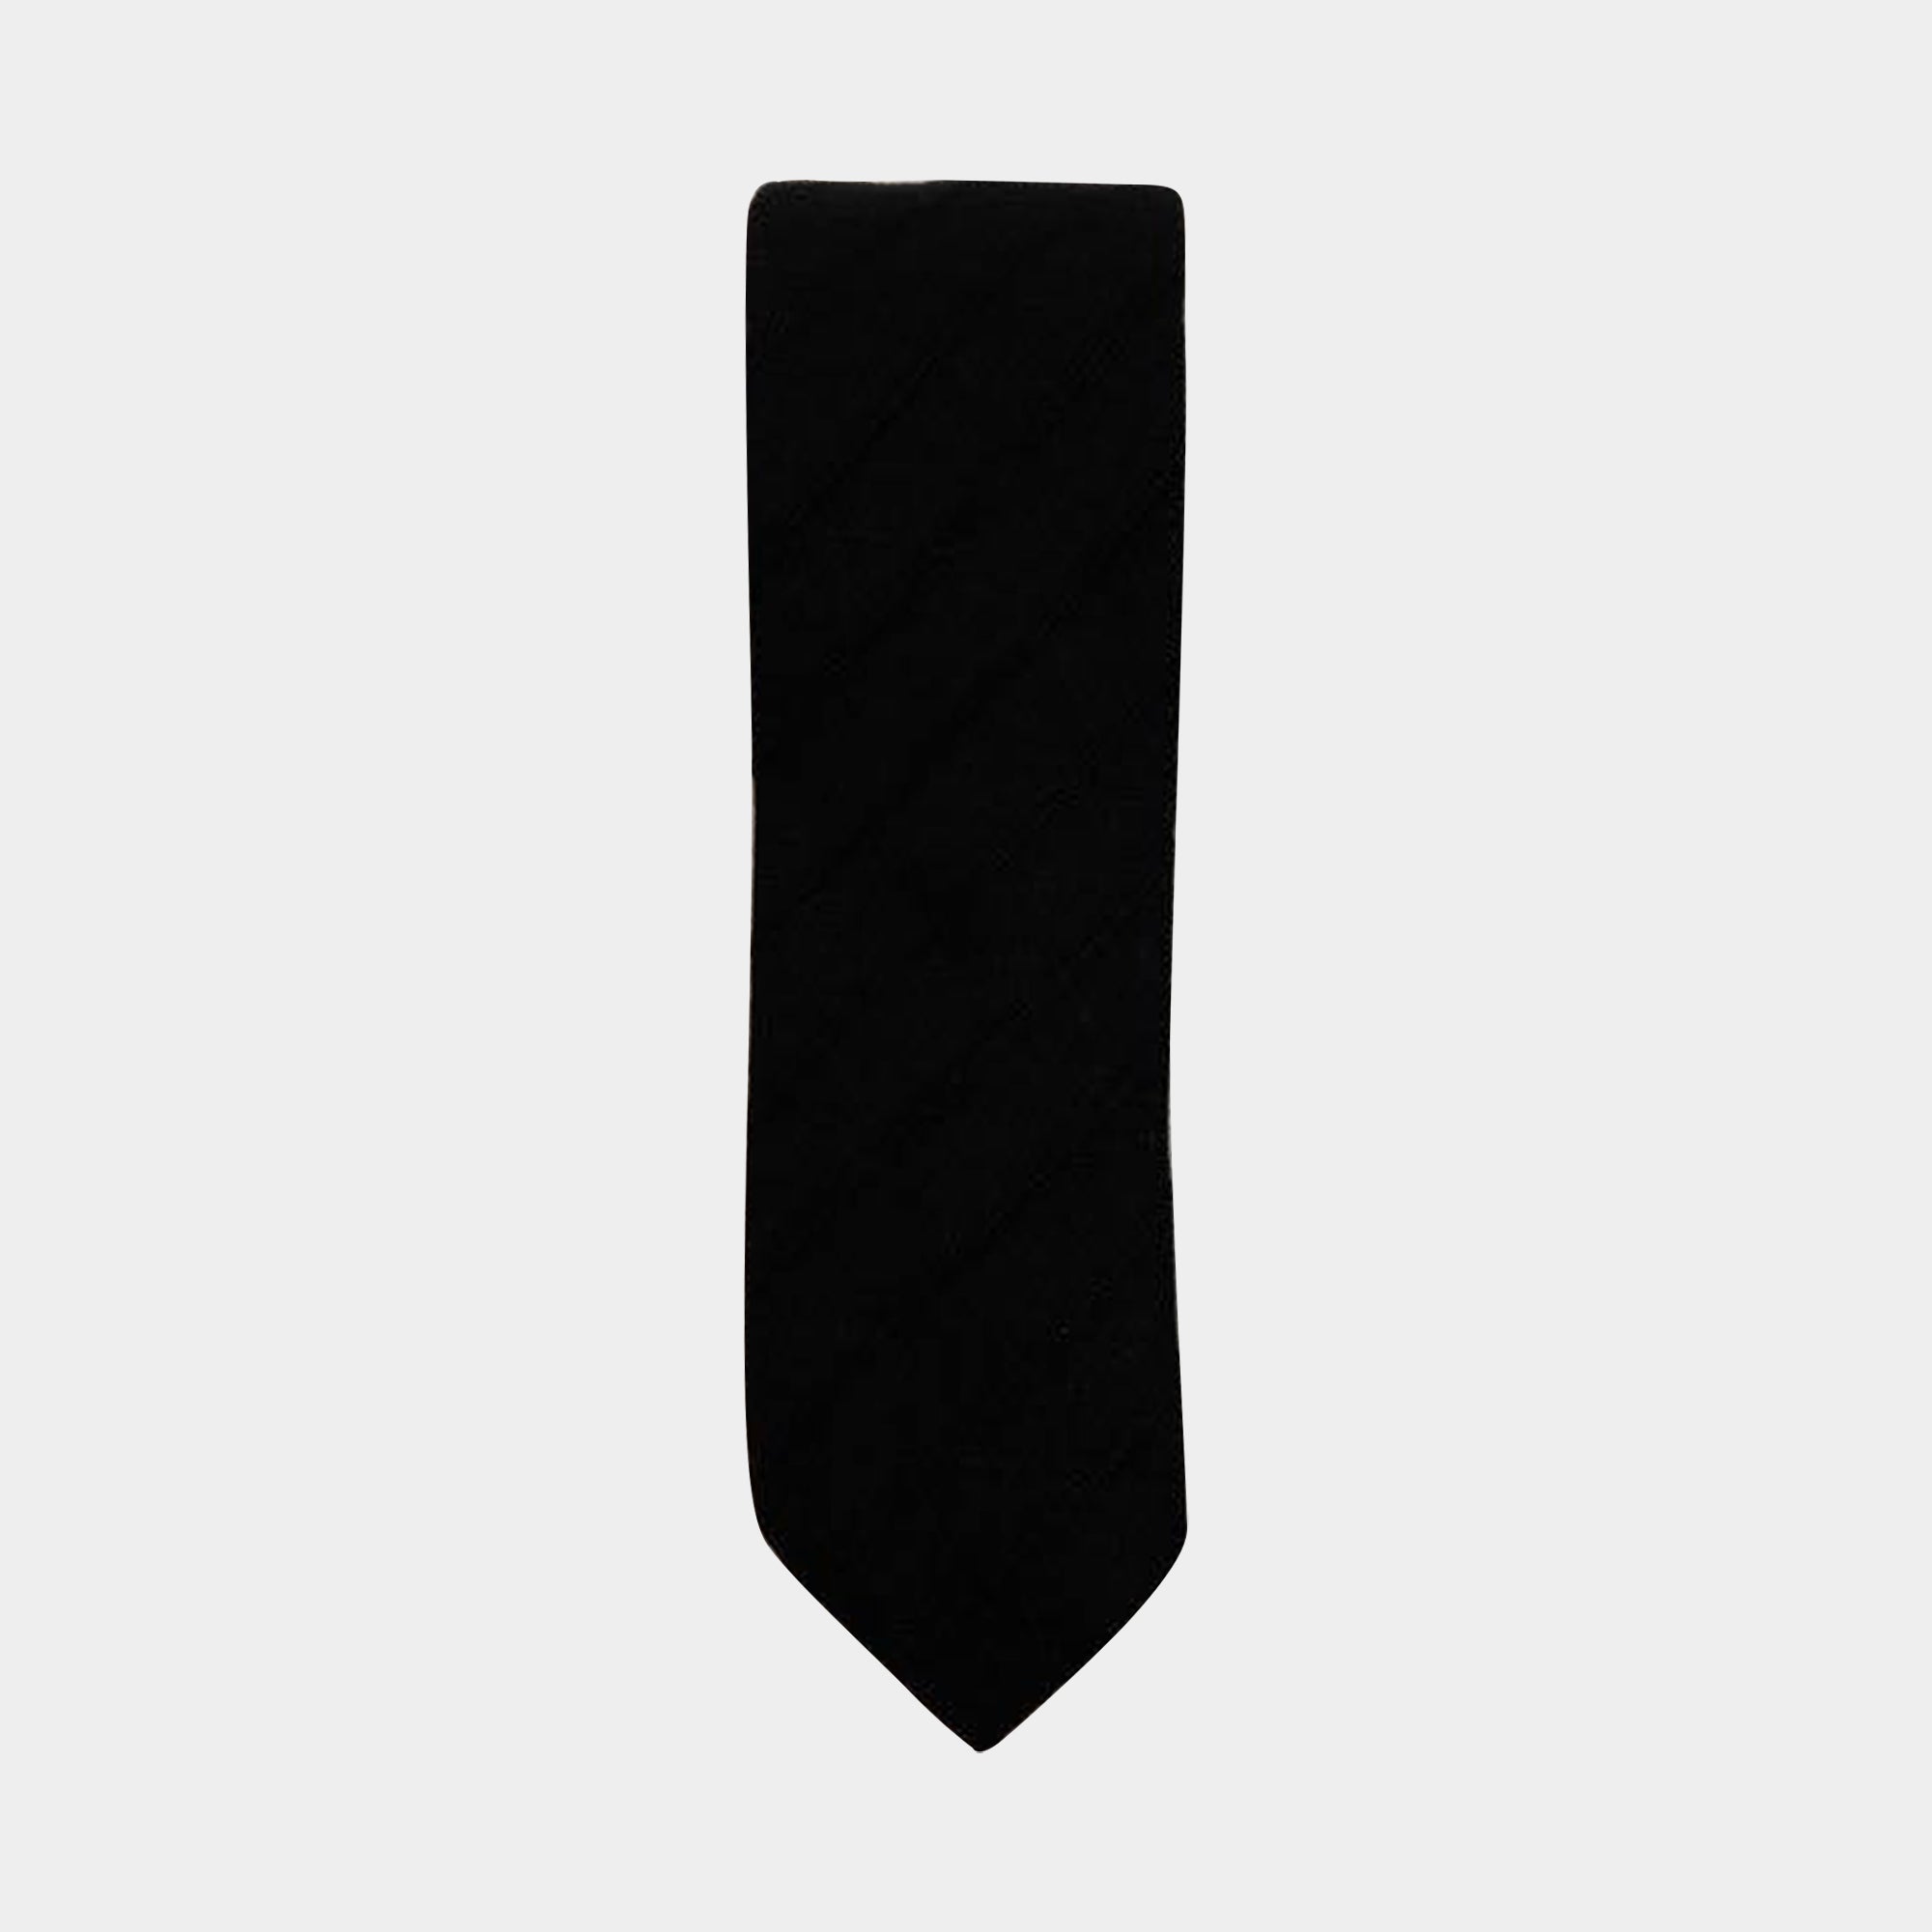 RINO - Men's Tie